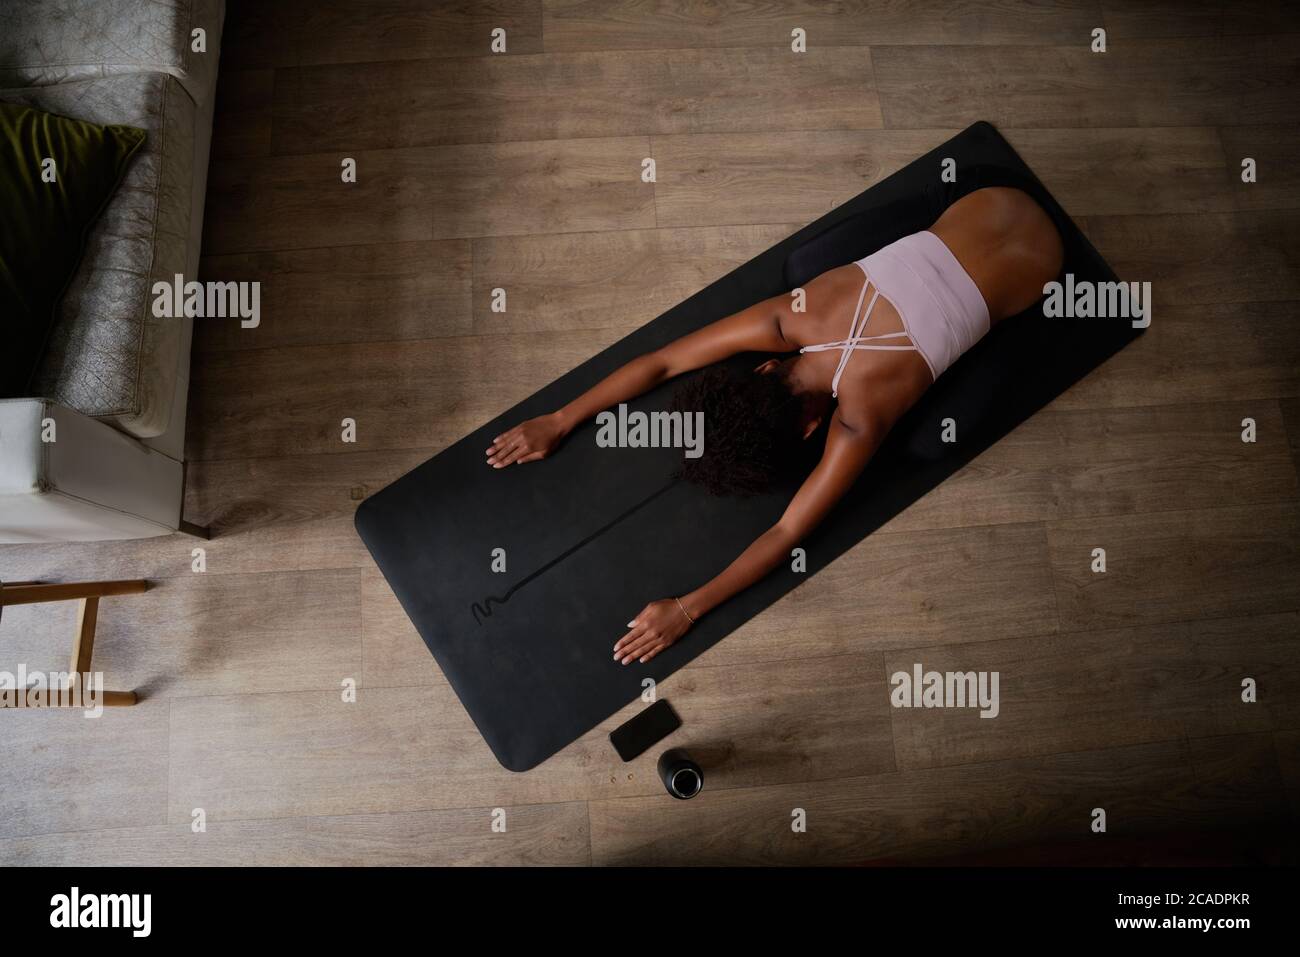 Vue en grand angle d'une jeune femme assise sur un tapis de yoga qui fait de l'exercice d'étirement Banque D'Images